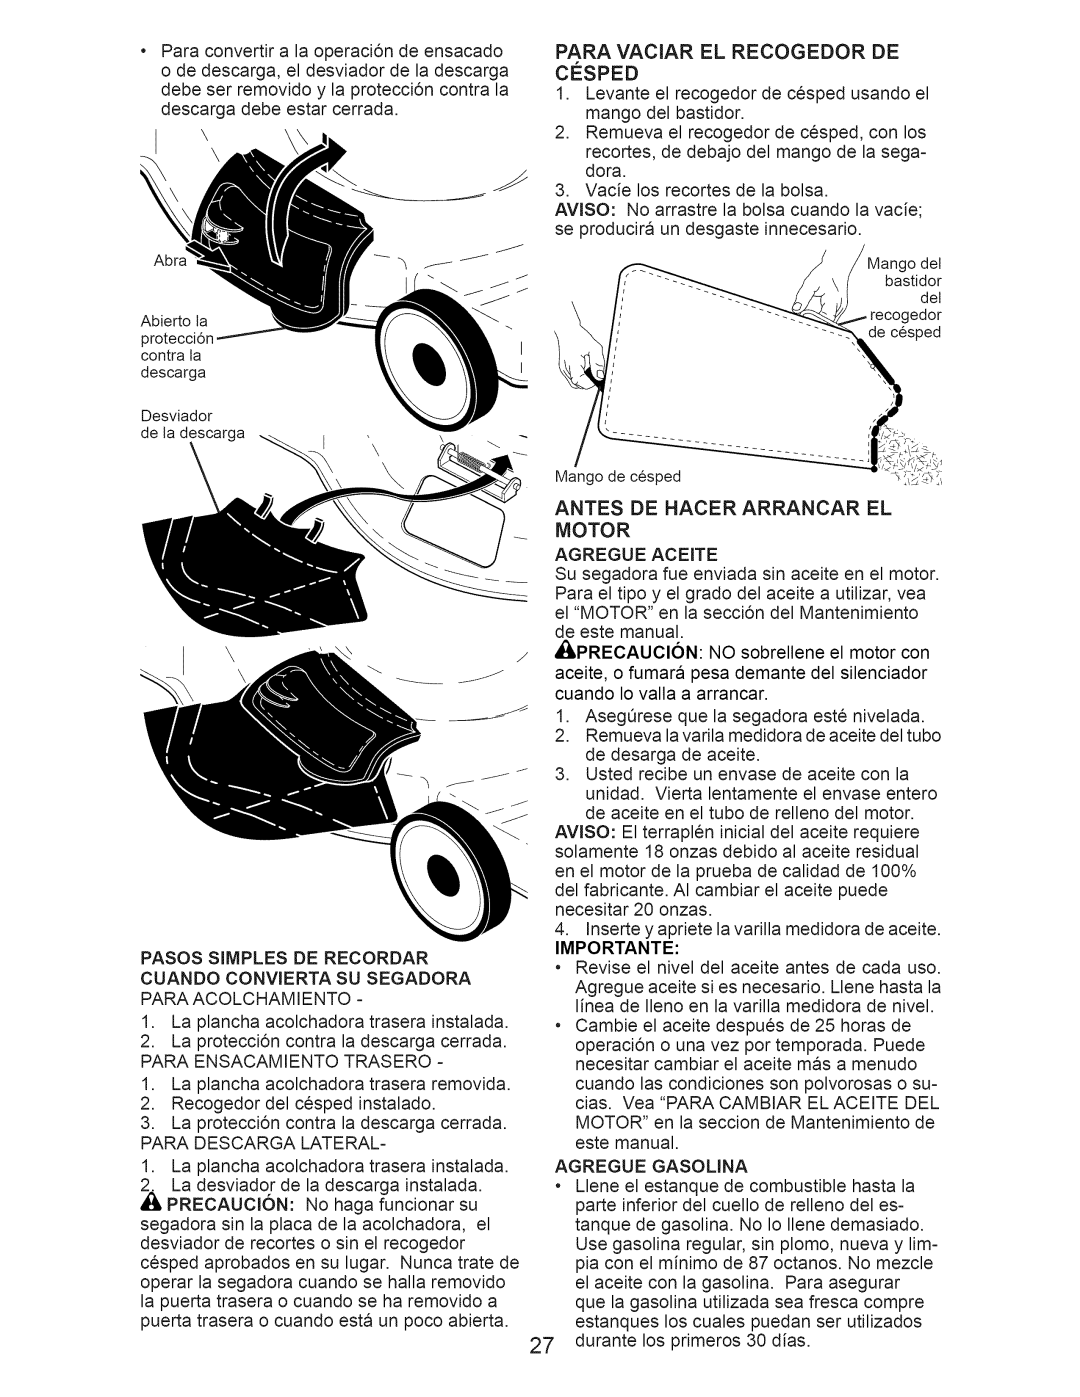 Craftsman 917.376234 manual Paraconvertira la operaci6ndeensacado, Antes De Hacer Arrancar El Motor 